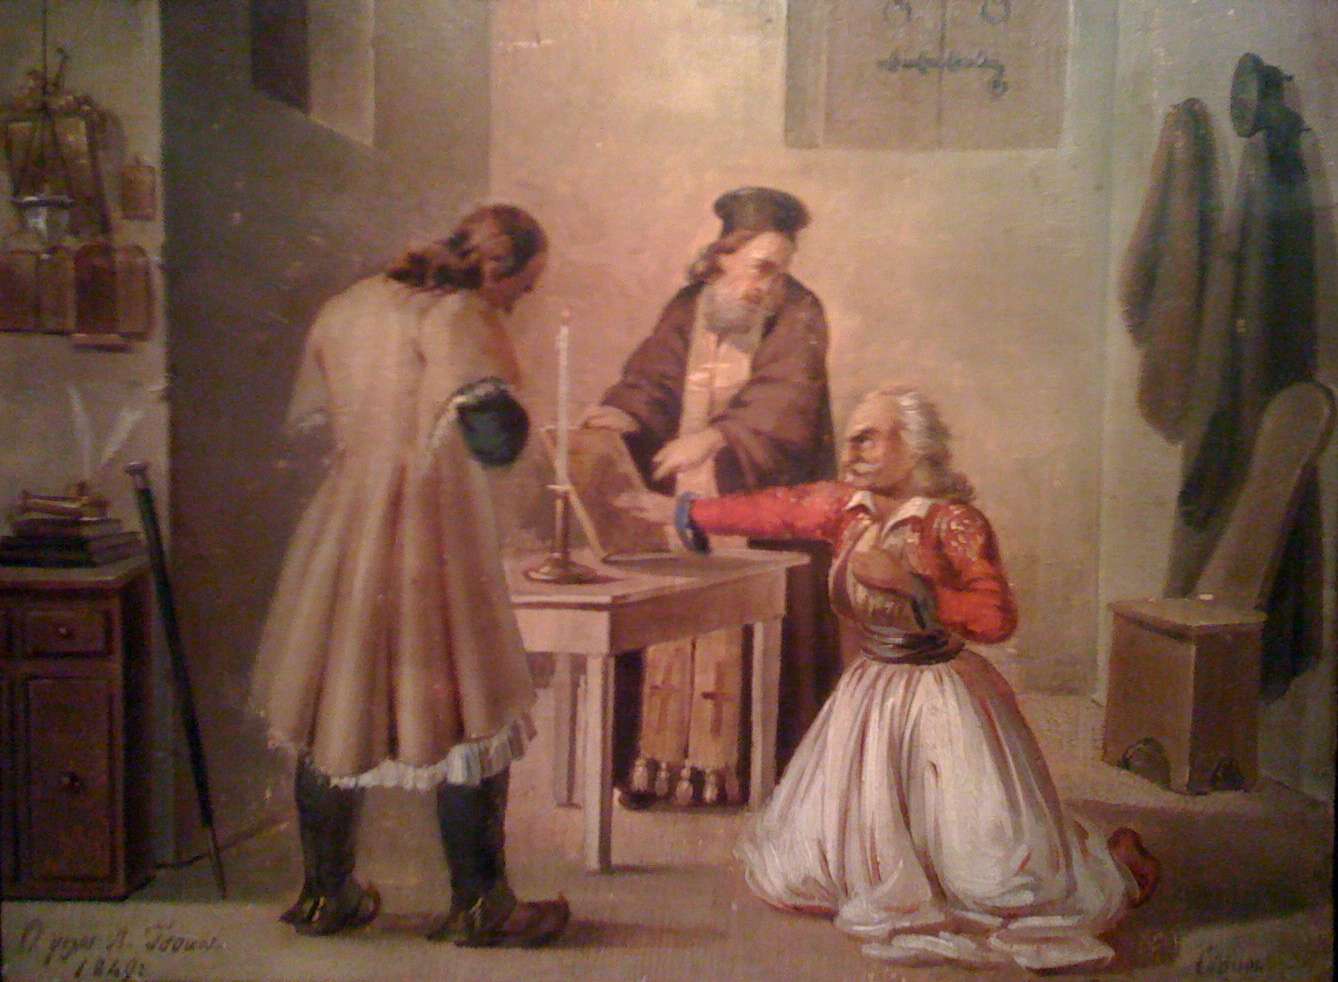 Ο όρκος, των Φιλικών, ελαιογραφία του Δ. Τσόκου (1849).